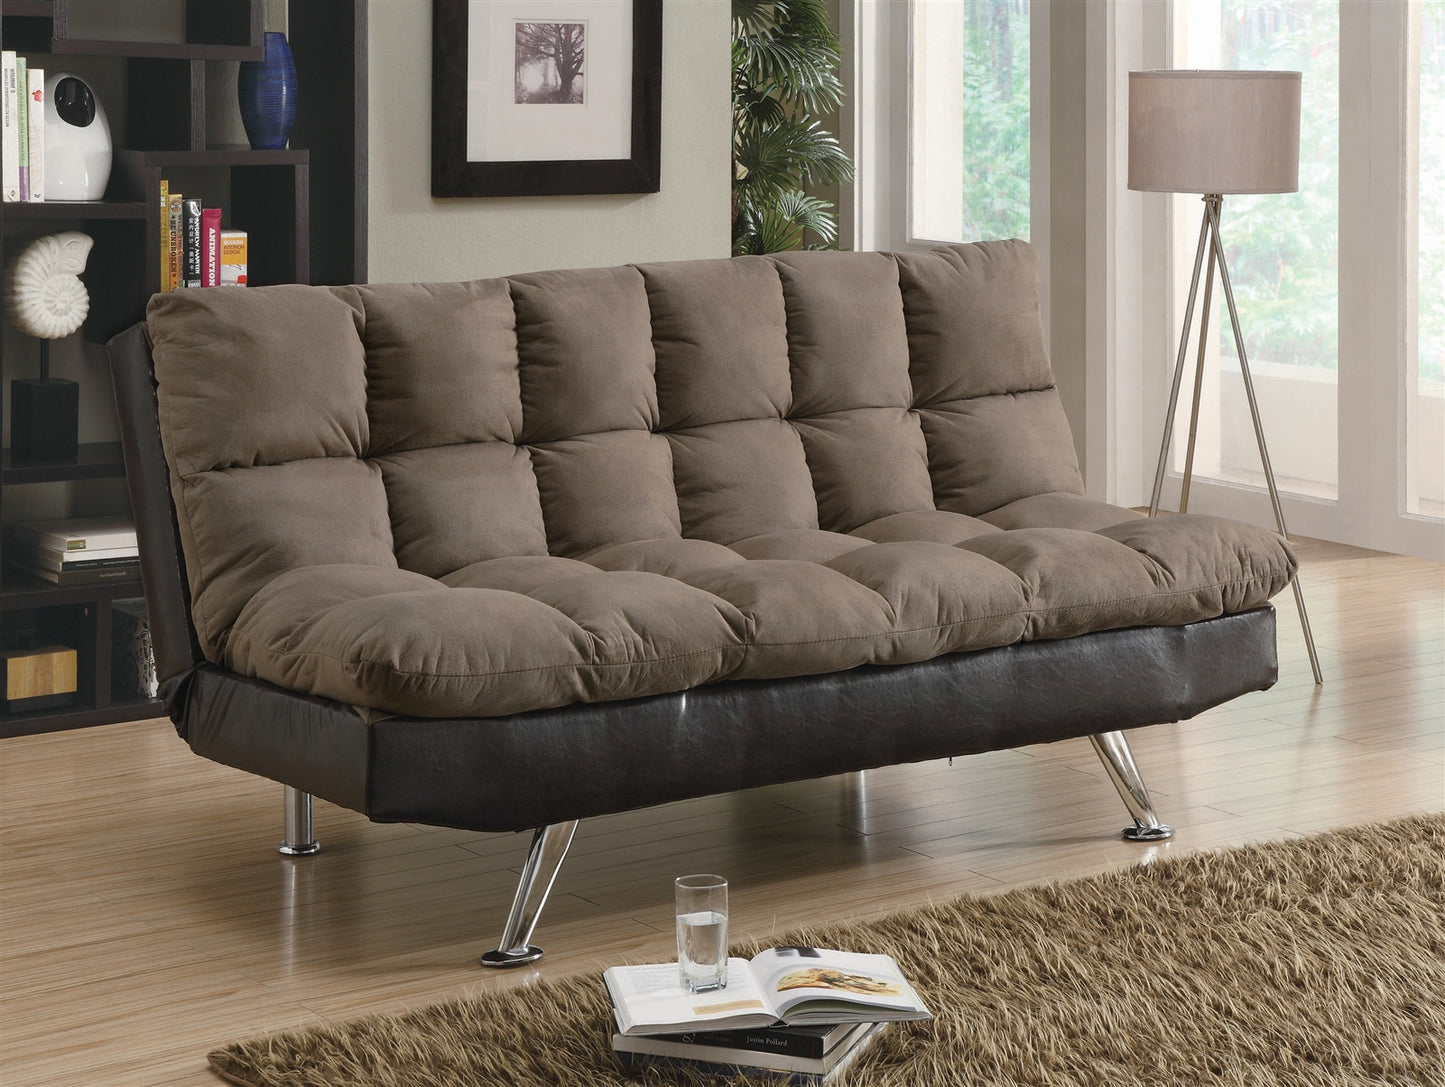 Saga 2-Tone Brown Microfiber Sofa Bed